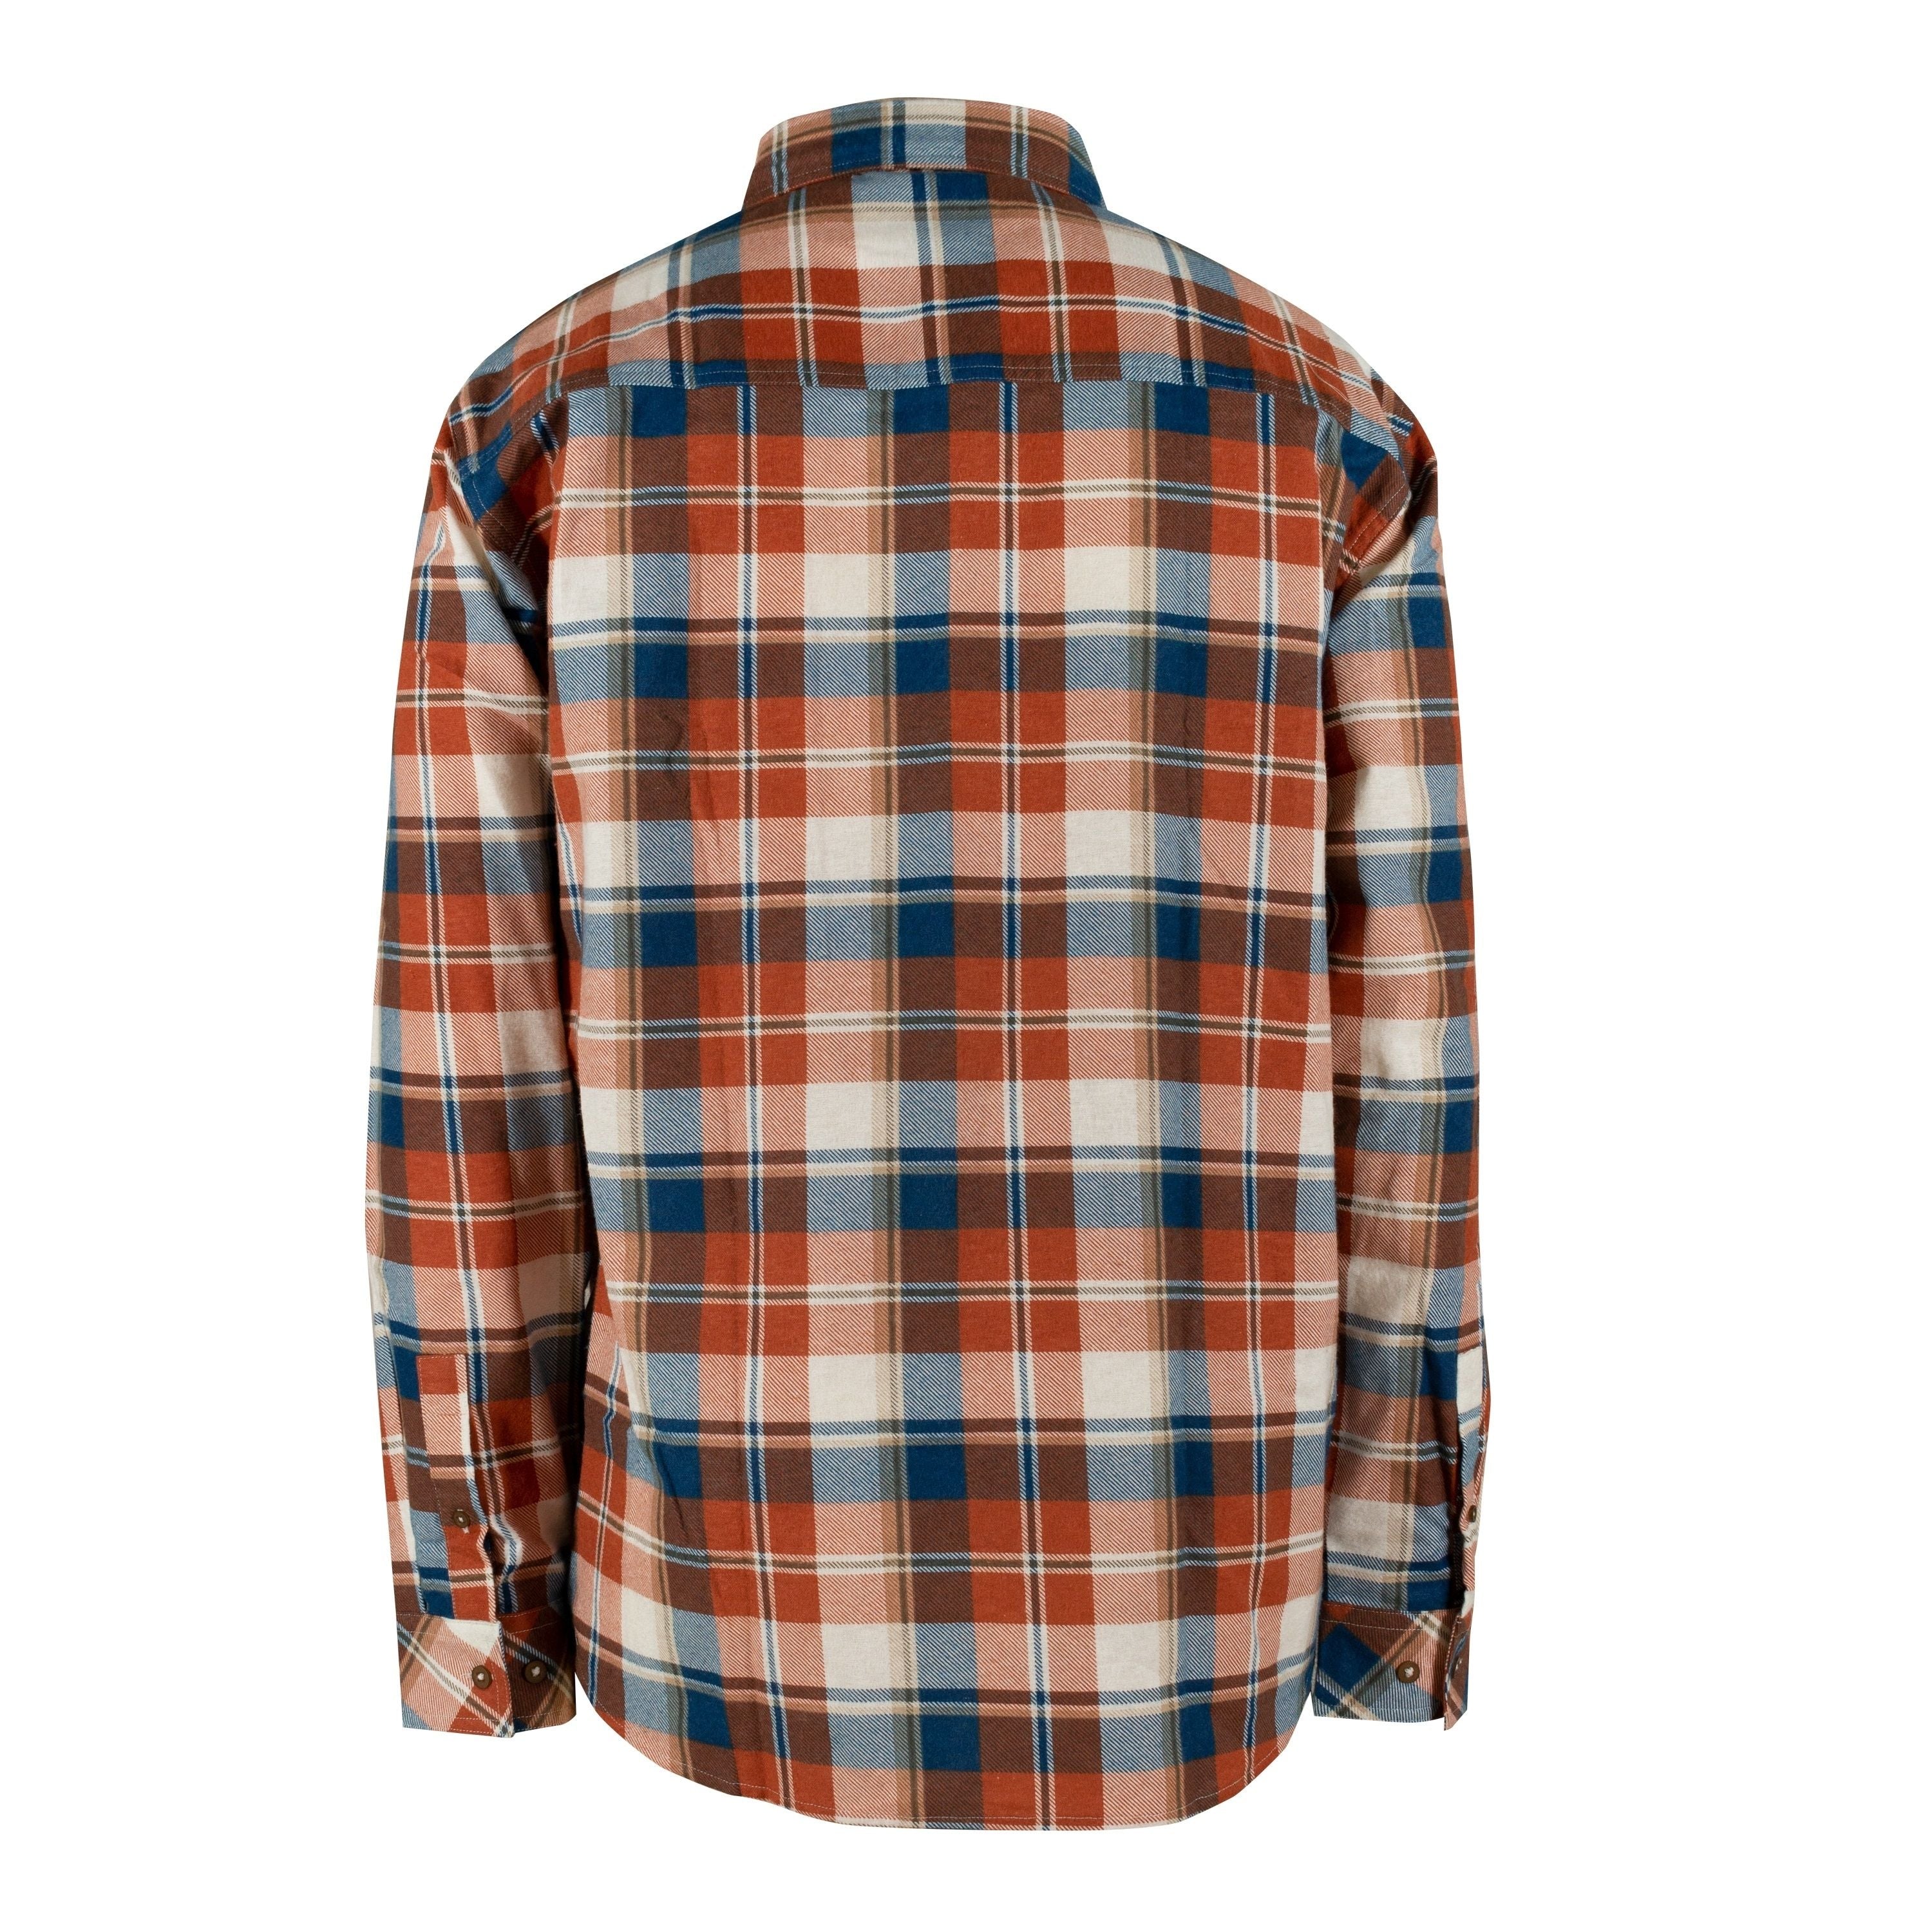 Chemise de flanelle - Homme||Flannel shirt - Men's